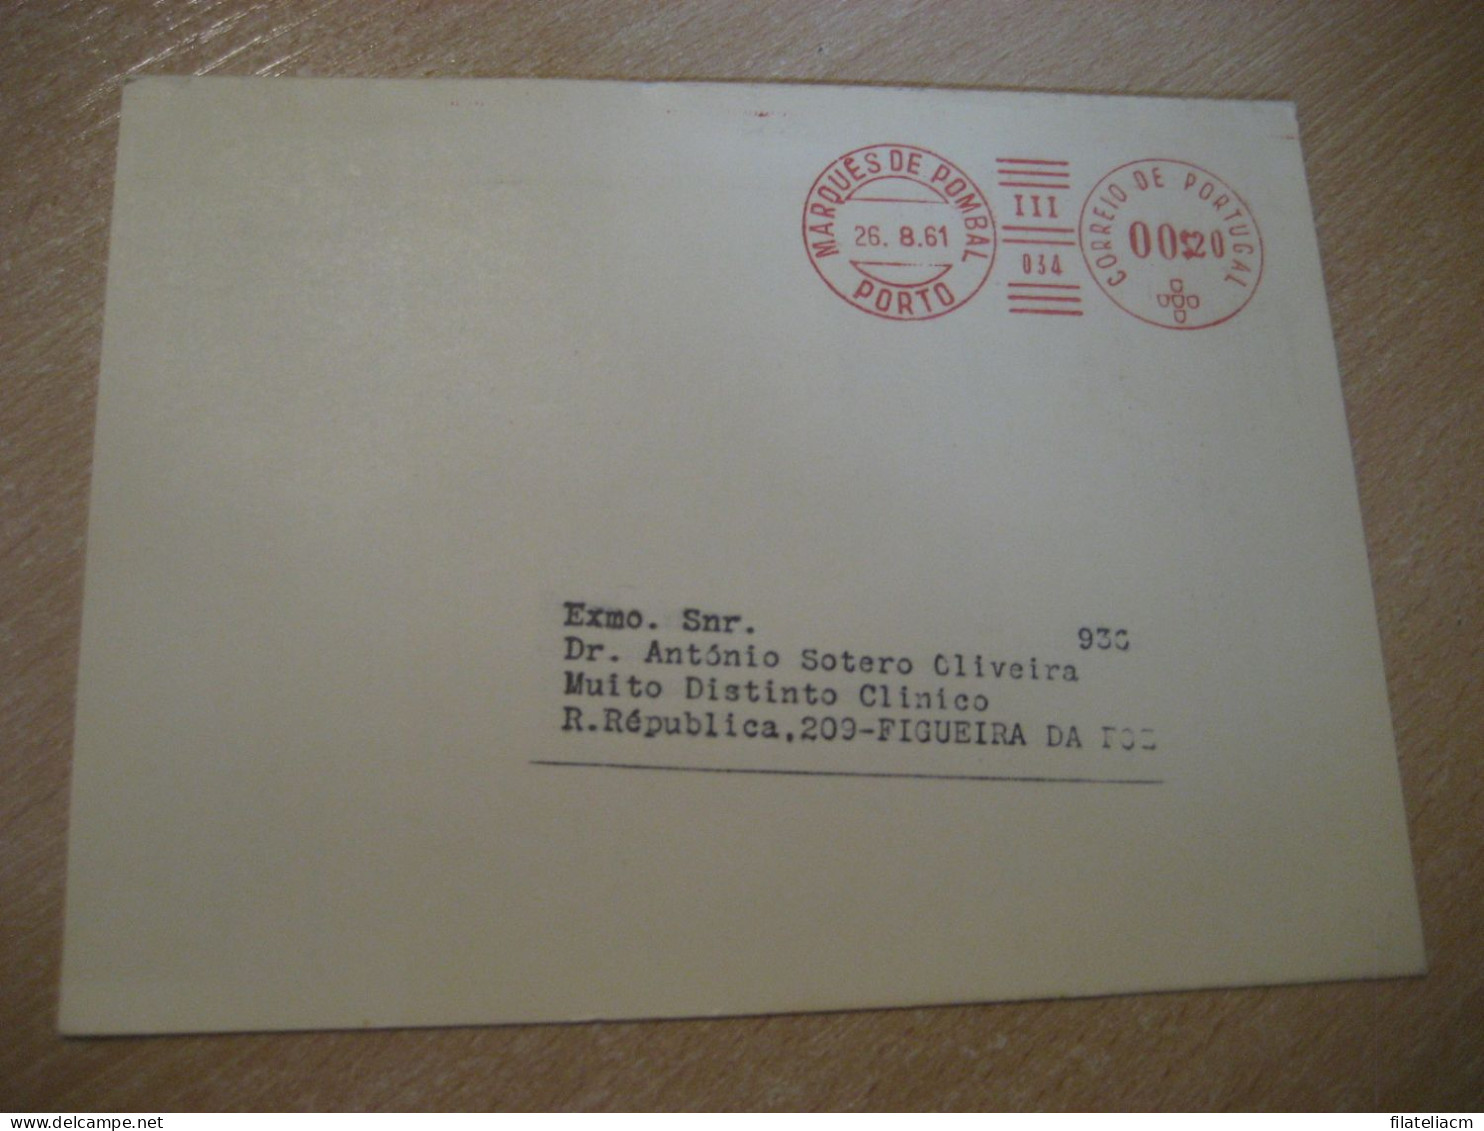 PORTO 1961 To Figueira Da Foz BIAL Cosatetril Tetraciclina Glucosamina Pharmacy Health Meter Mail Document Card PORTUGAL - Cartas & Documentos